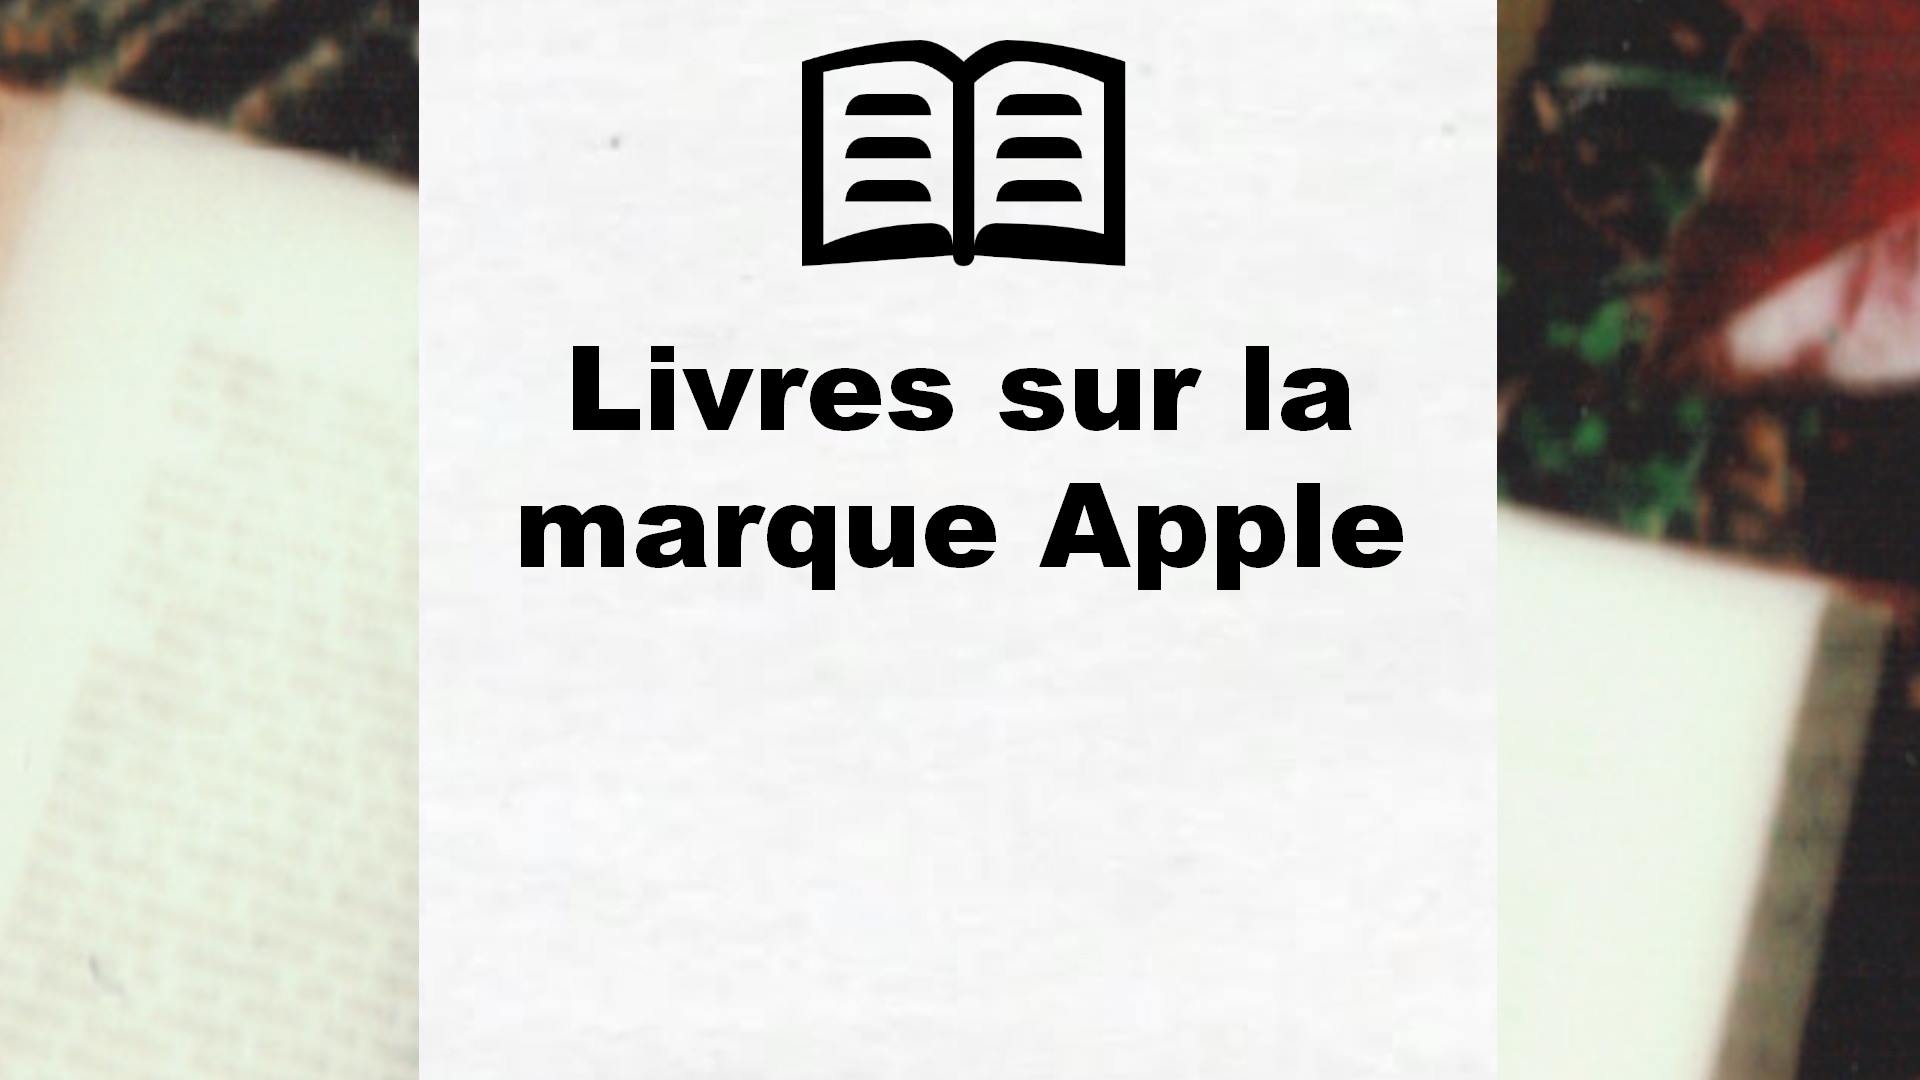 Livres sur la marque Apple